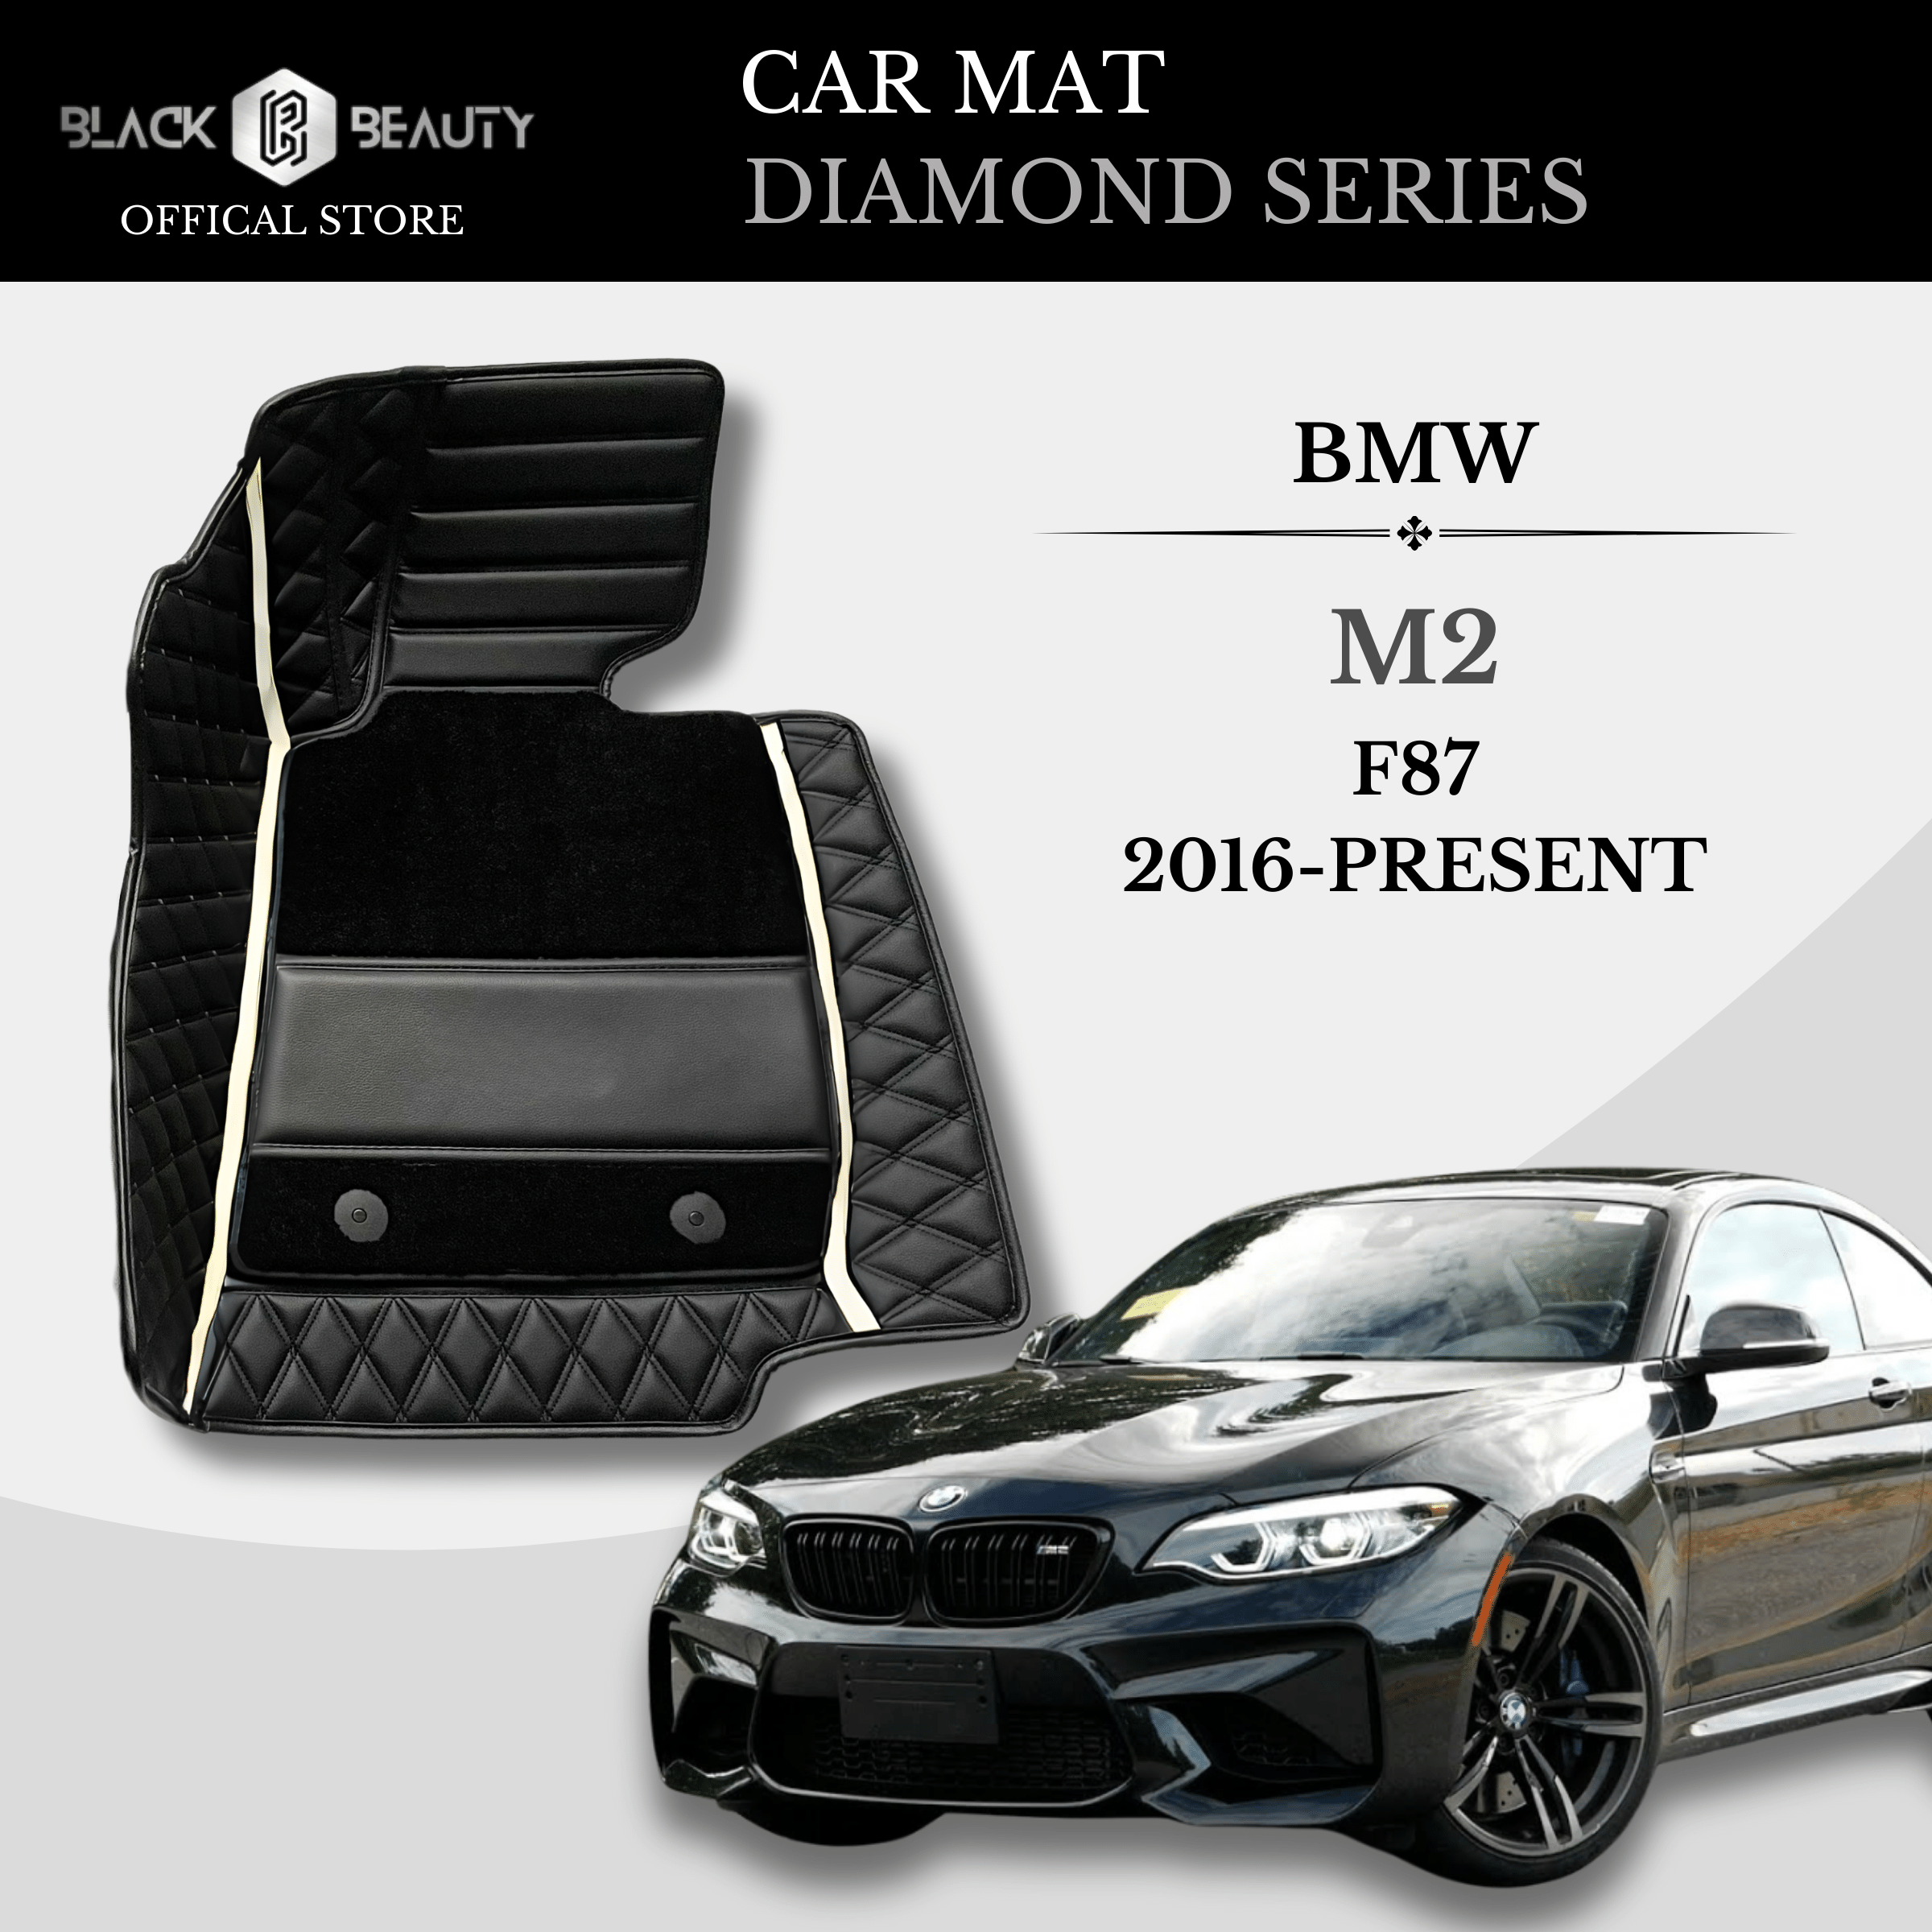 BMW M2 F87 (2016-Present) - Diamond Series Car Mat